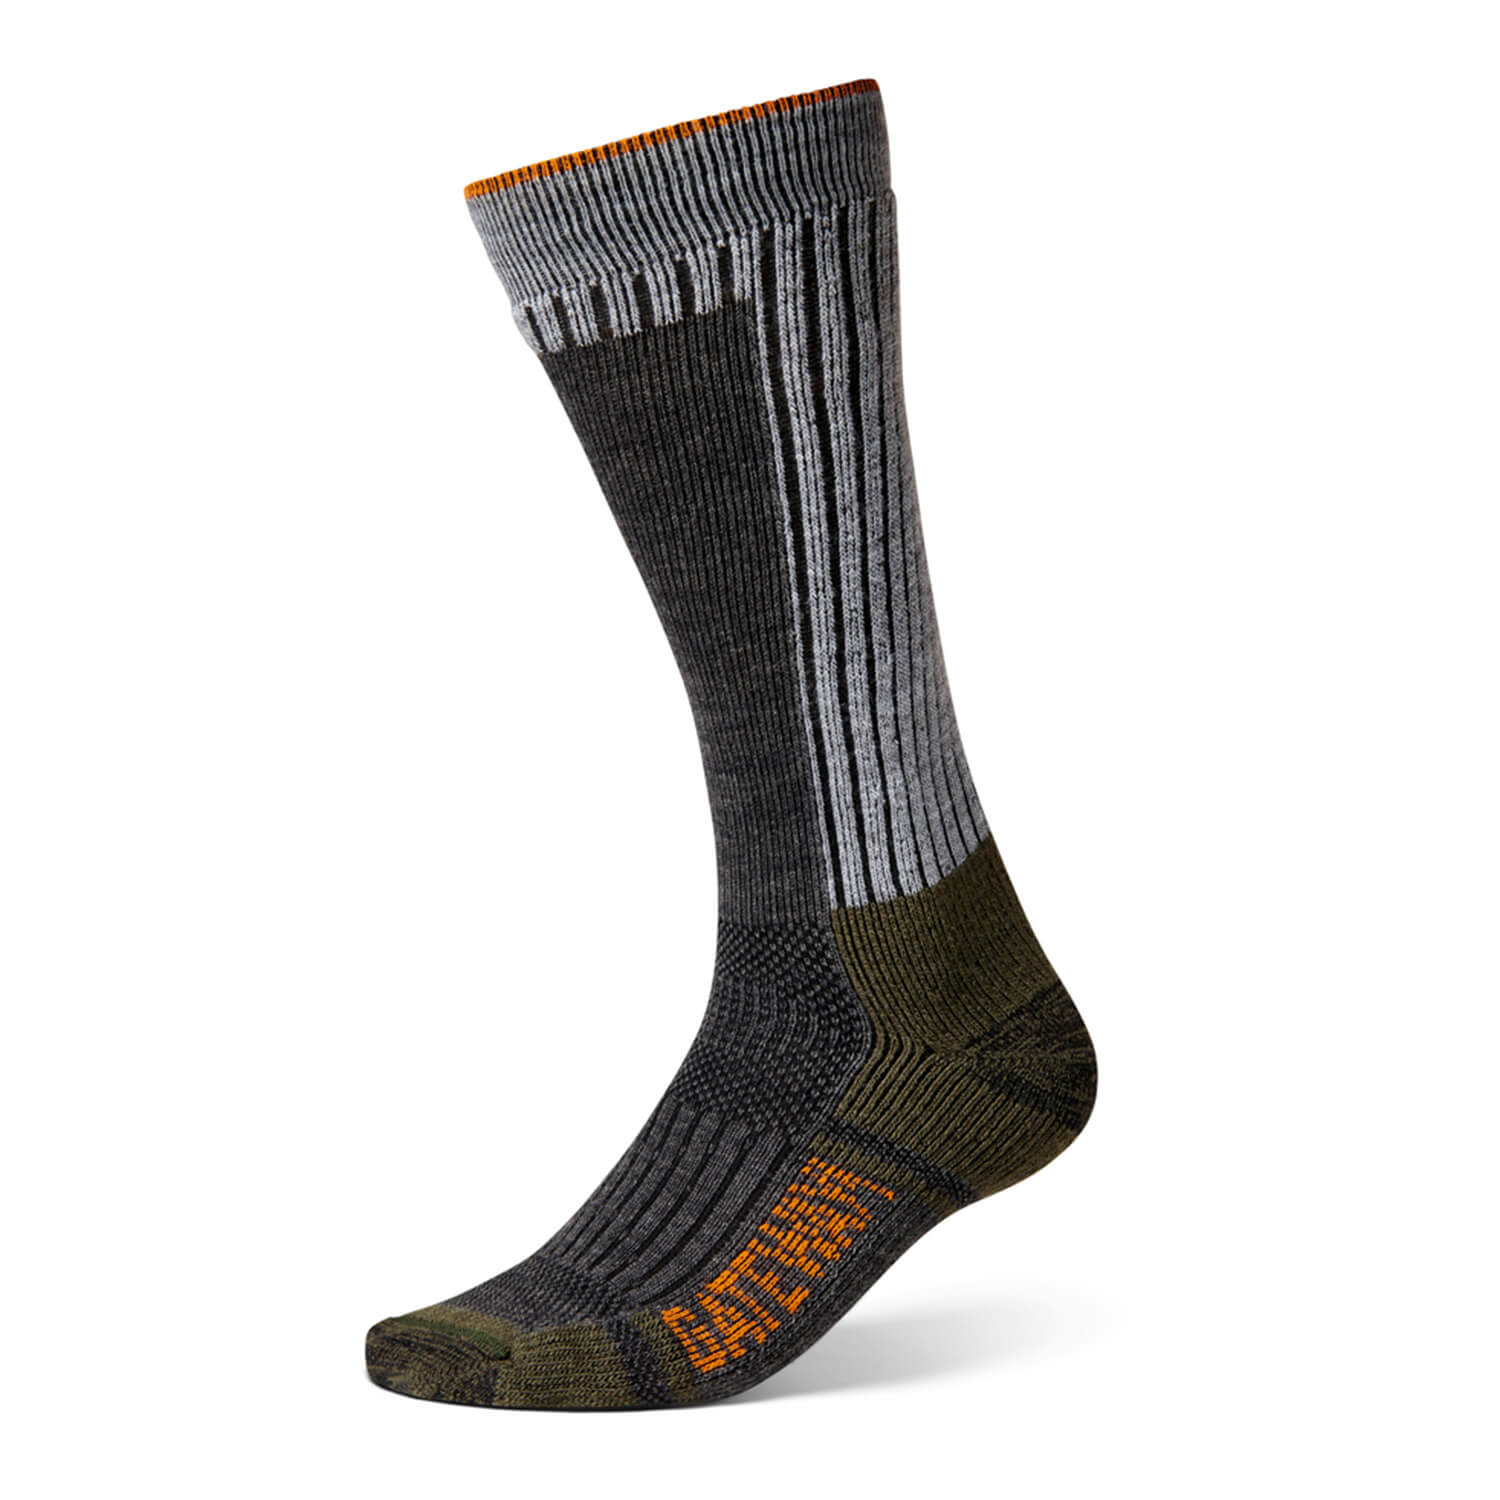 Gateway1 Merino Socks Boot calf